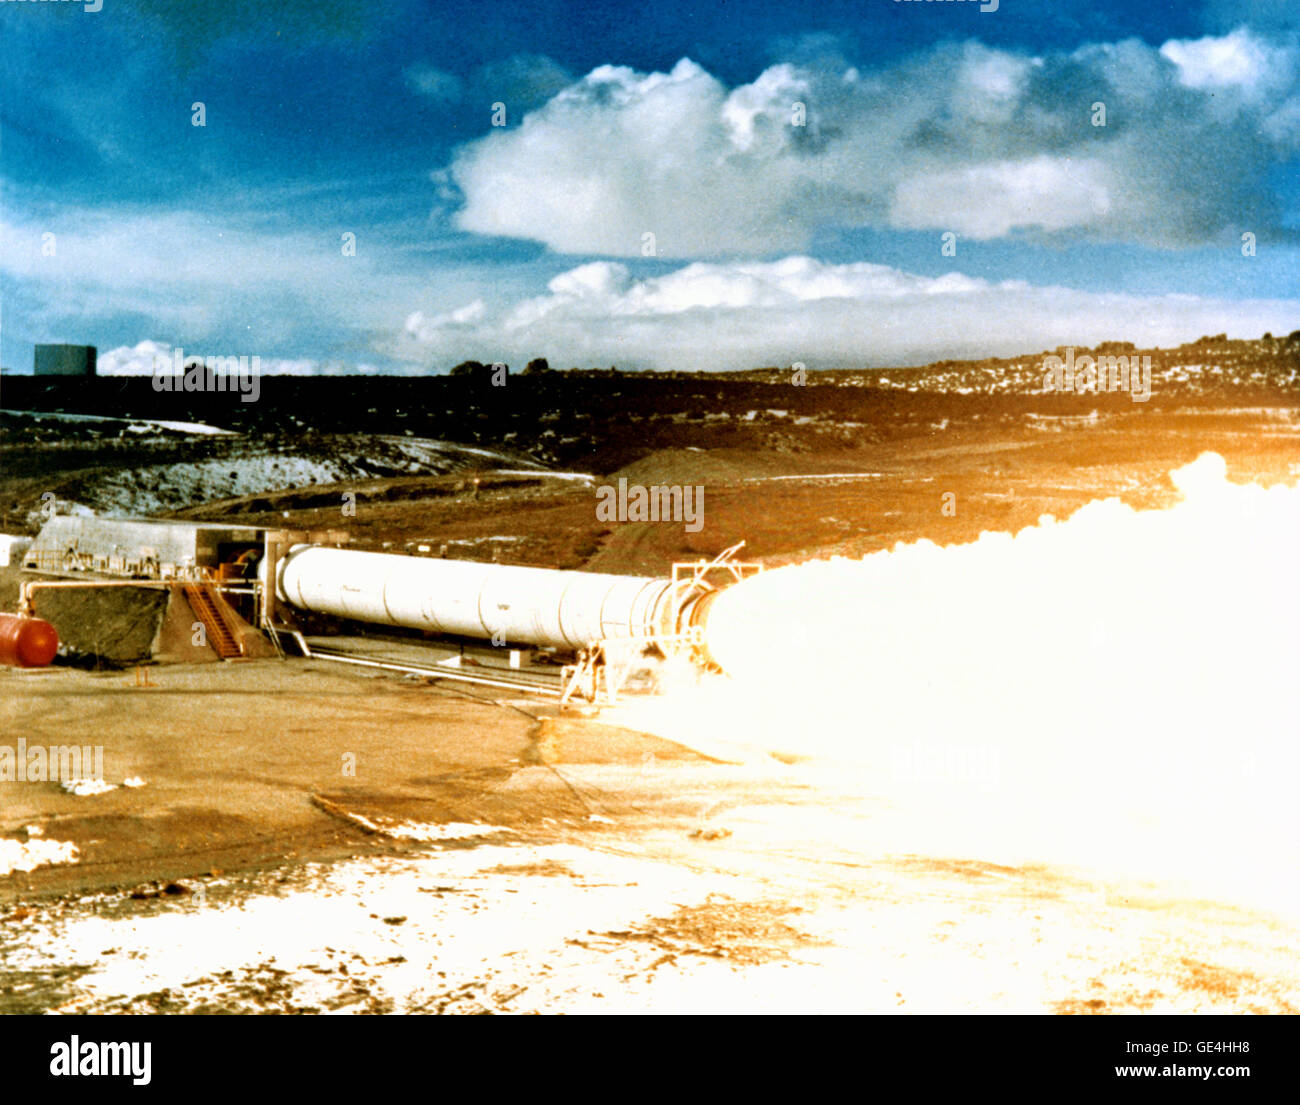 Dieses Foto wurde während des Brennens der statischen Test des DM-2 (Demonstration Motor) für die Solid Rocket Booster (SRB) auf dem Testgelände von Thiokol Corporation in der Nähe von Brigham City, Utah aufgenommen. Als einer der wichtigsten Komponenten des Space Shuttle liefern SRBs die meisten der macht, den kombinierten Schub von rund 5,8 Millionen Pfund für die ersten zwei Minuten des Fluges. Die SRBs nahm das Space Shuttle auf einer Höhe von 28 Meilen und einer Geschwindigkeit von 3.094 Meilen pro Stunde, bevor sie getrennt und fiel zurück in den Ozean abgerufen, renoviert und auf einen anderen Flug vorbereitet. Marshall Space Flight Ce Stockfoto